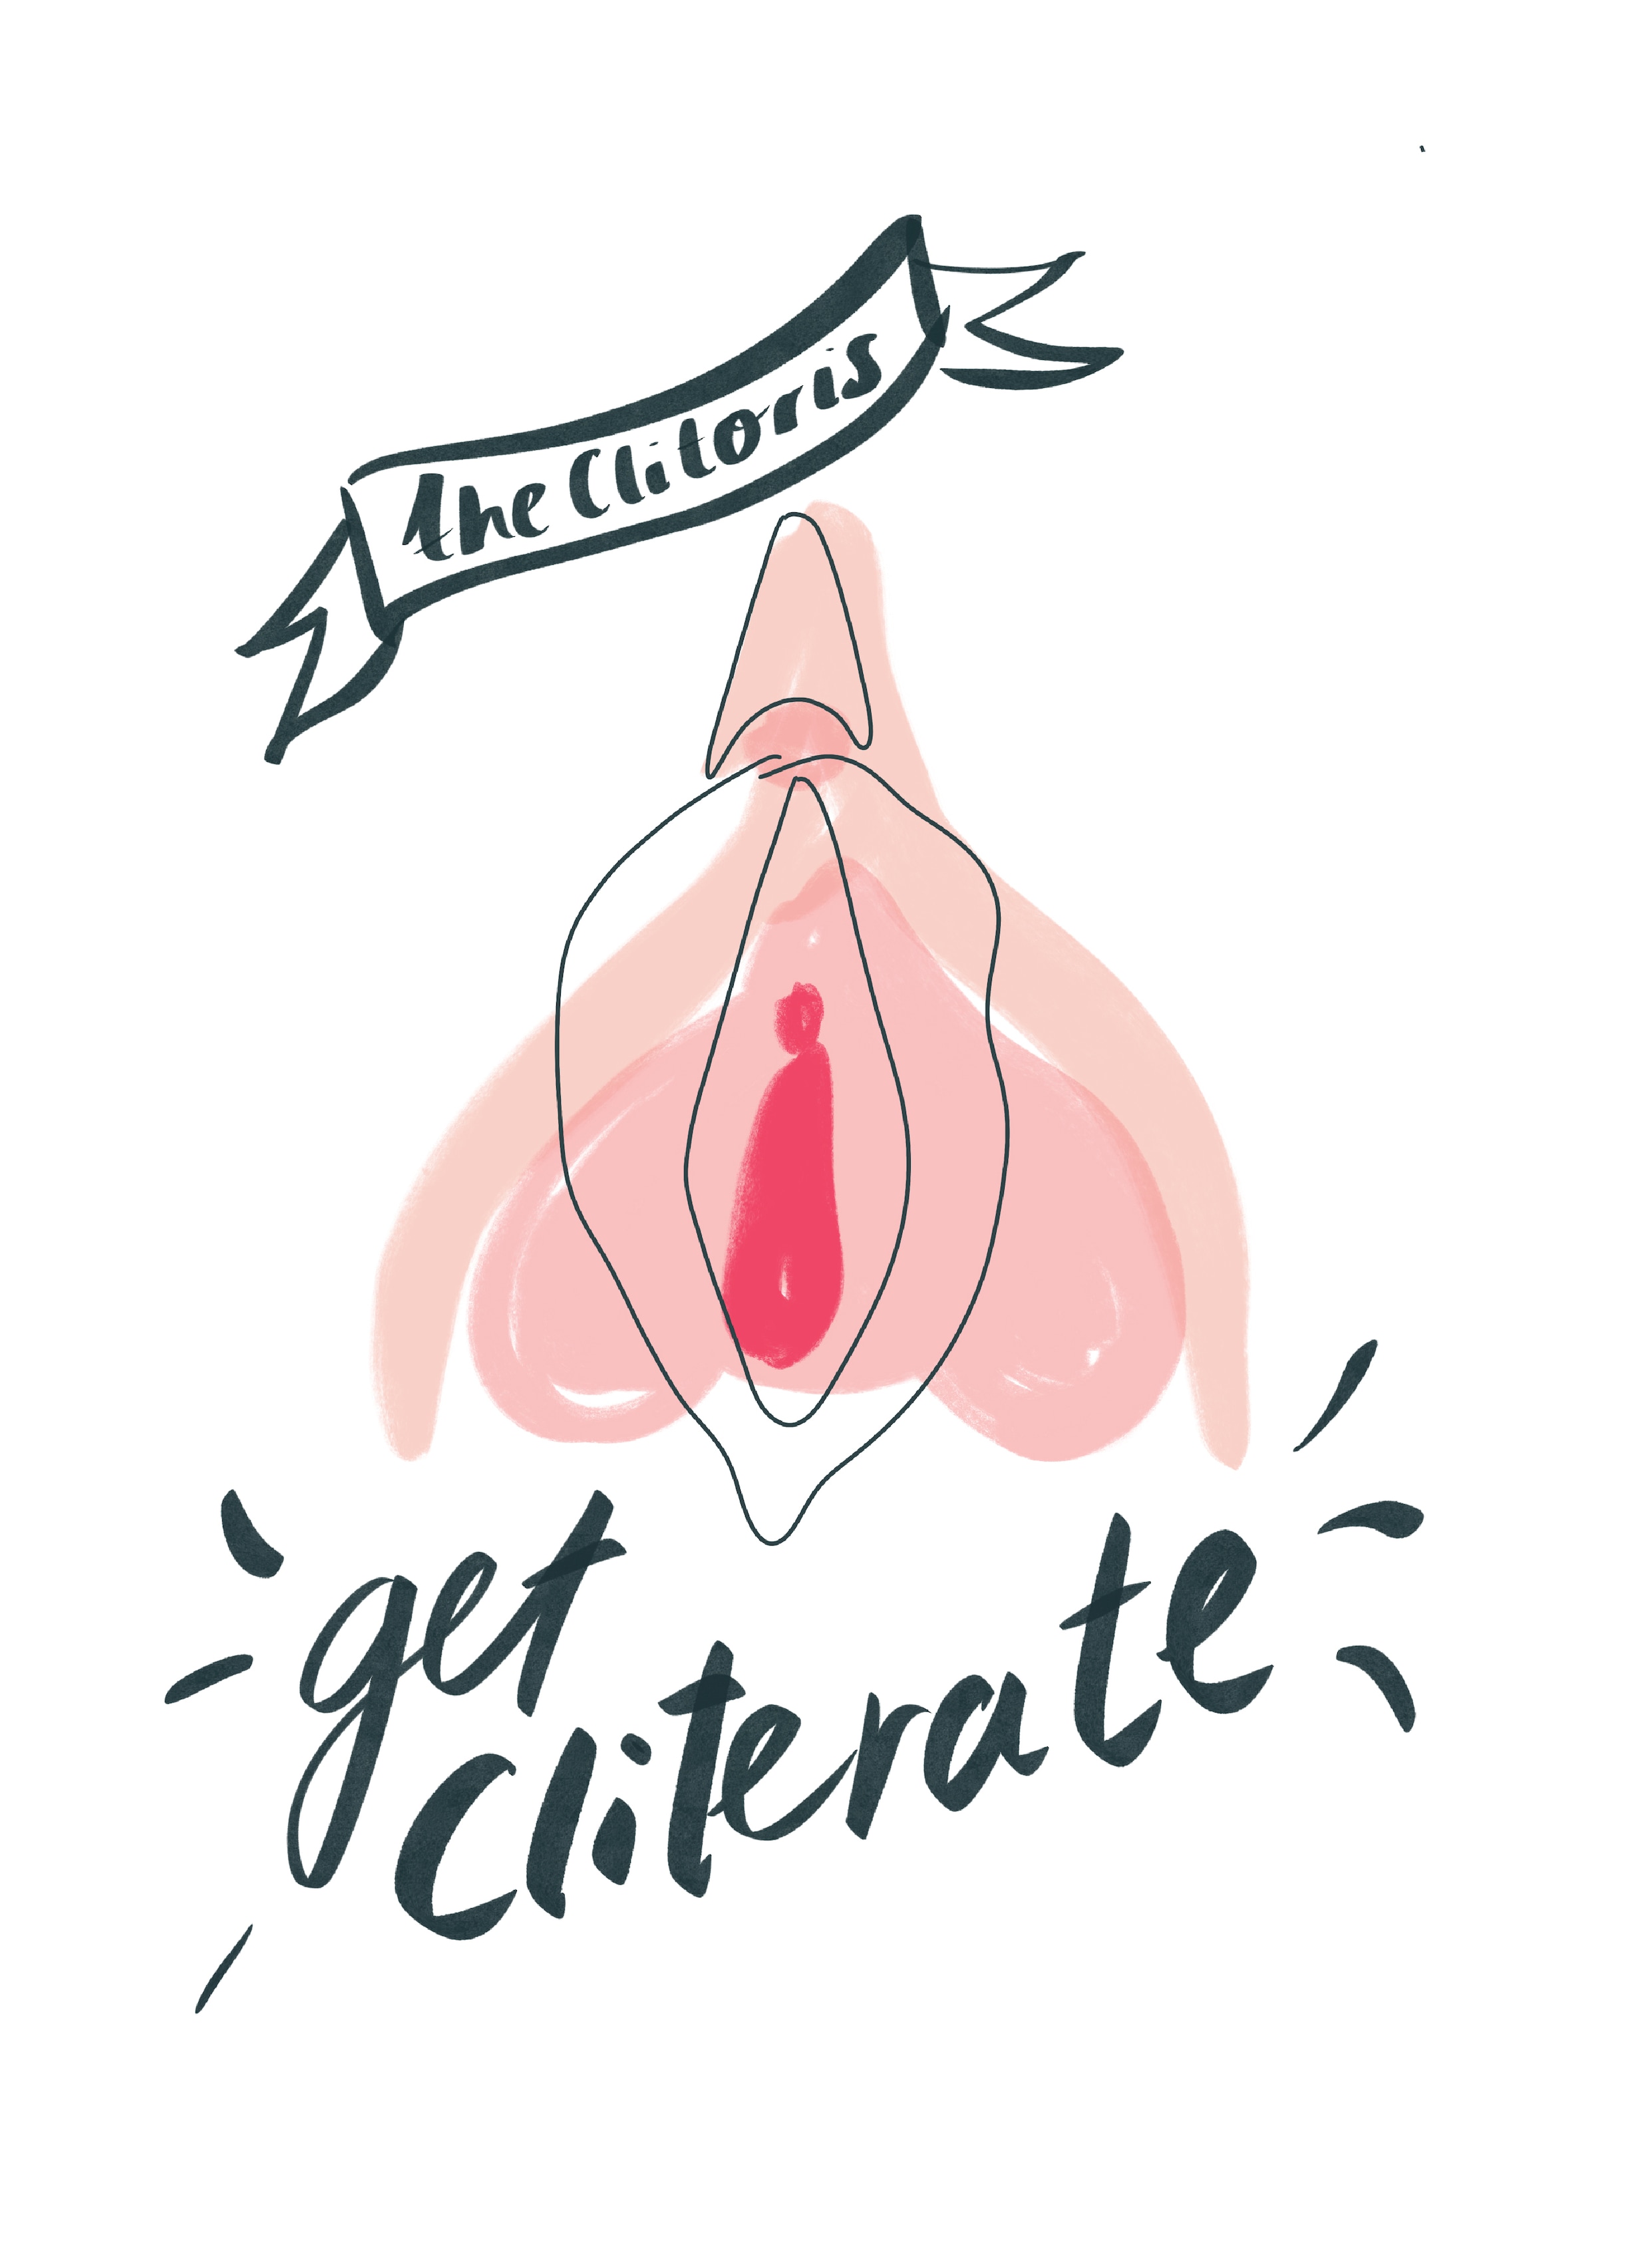 De clitoris is bezig aan haar eigen coming-of-age-verhaal